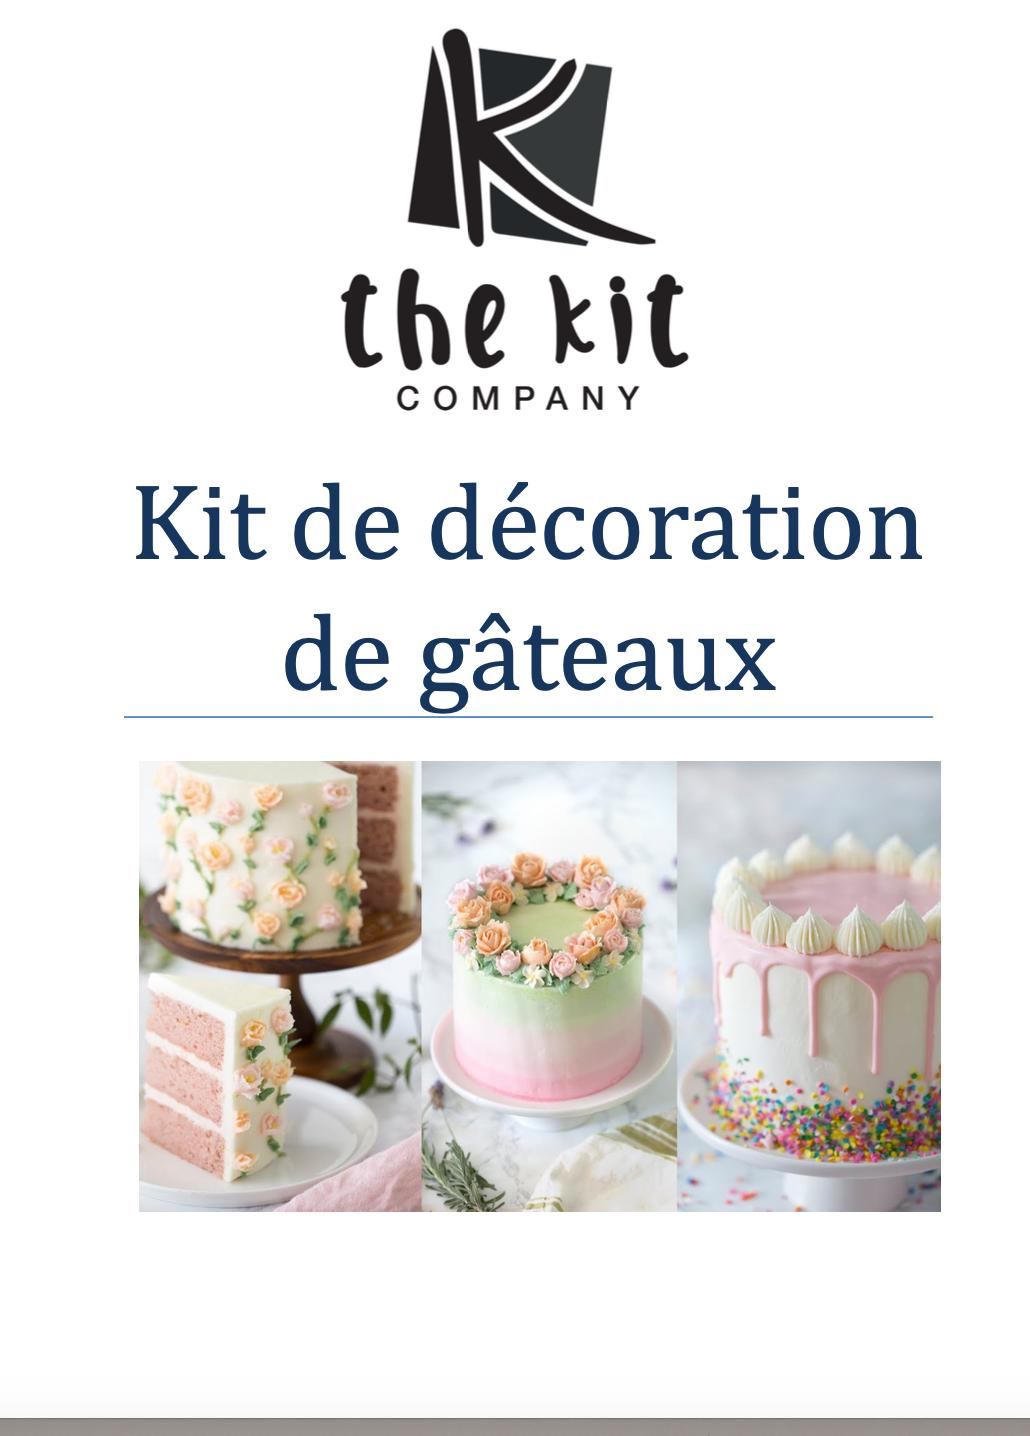 Podręcznik użytkownika zestawu do dekorowania ciast — francuski